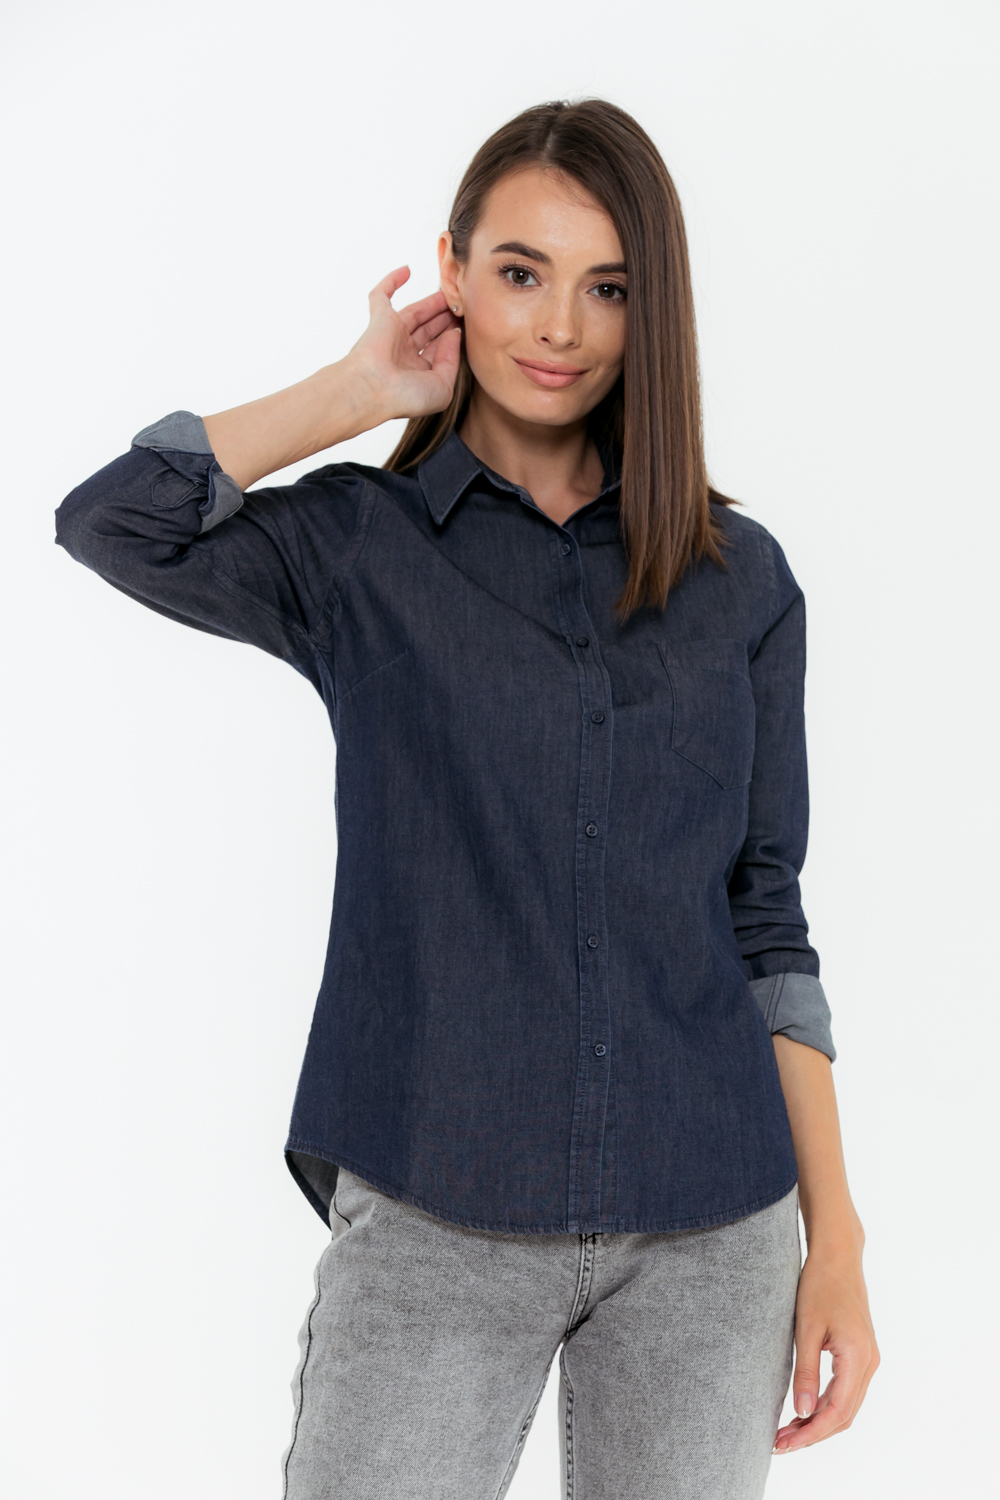 Рубашка женская SKORTE, темно-синяя (джинс)